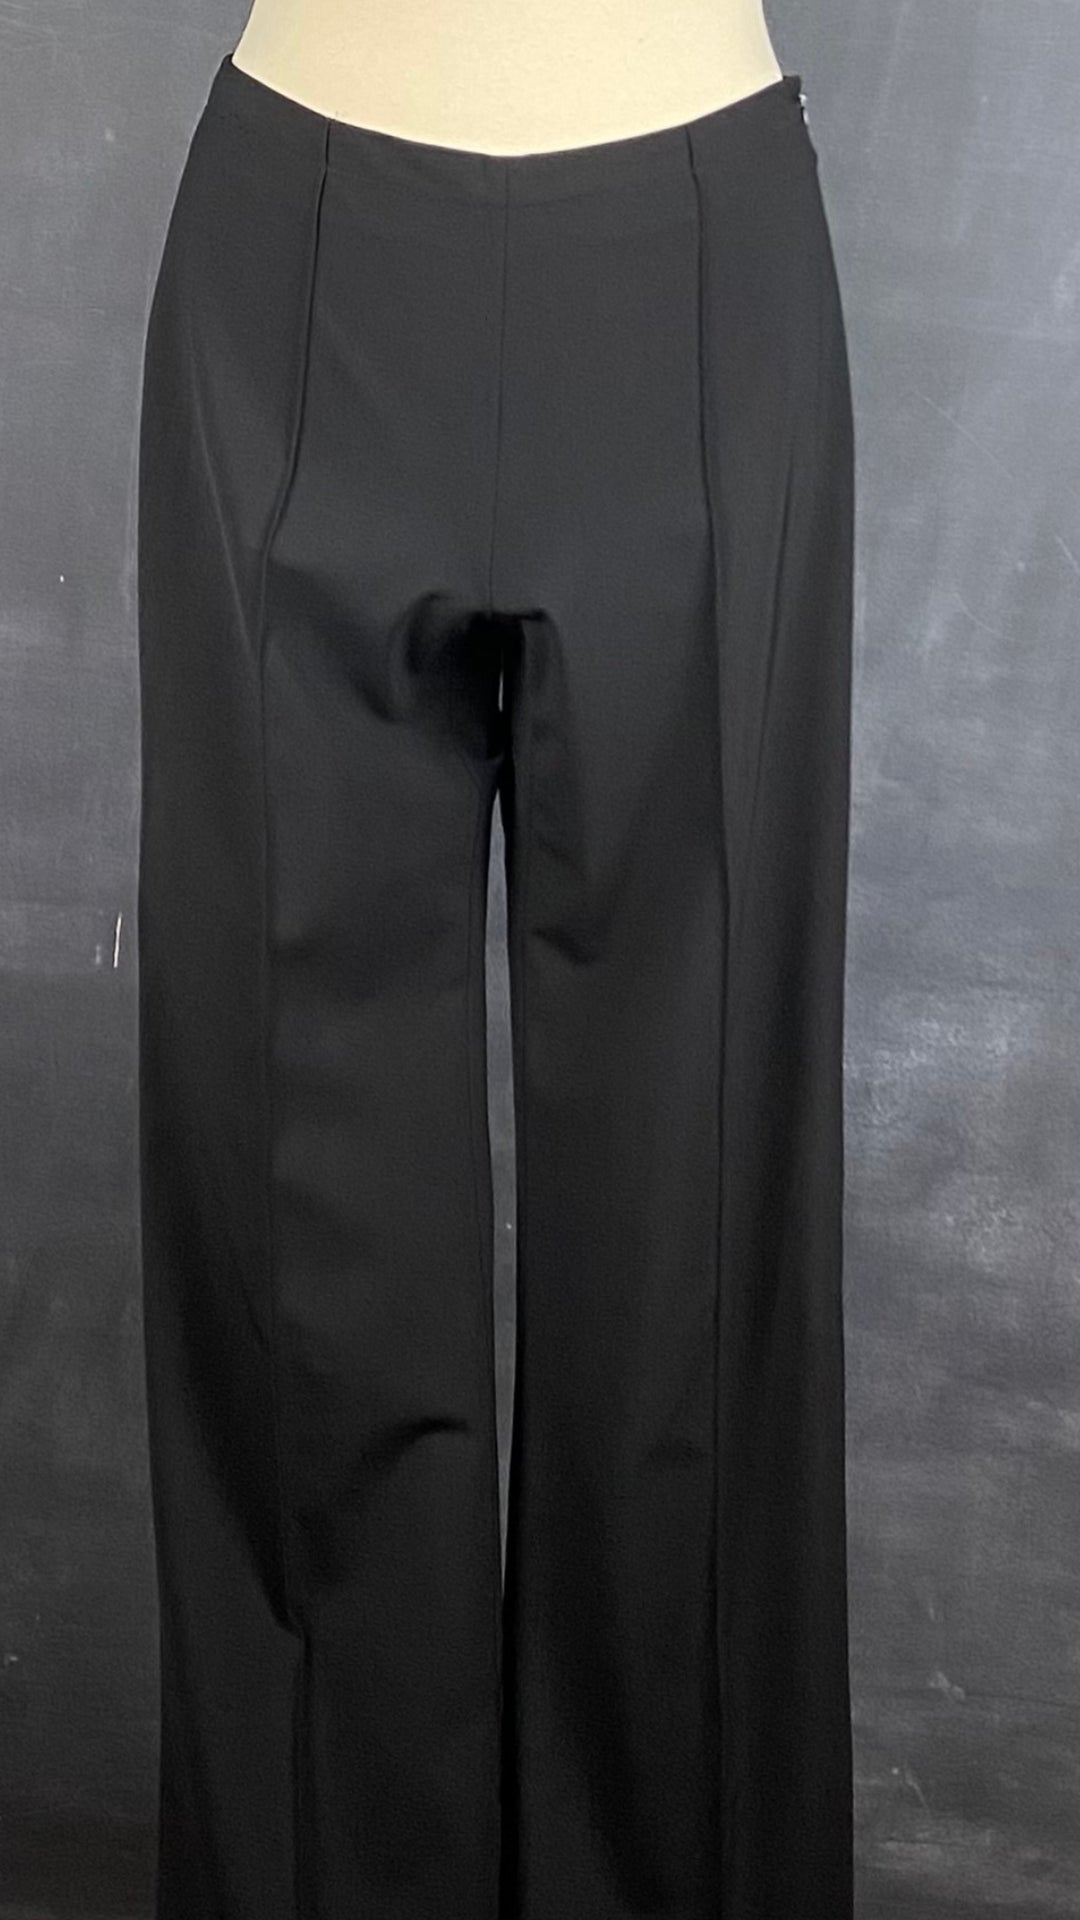 Pantalon noir jambe ample en ultra fin lainage Theory, taille 6. Vue de face, sur le mannequin.